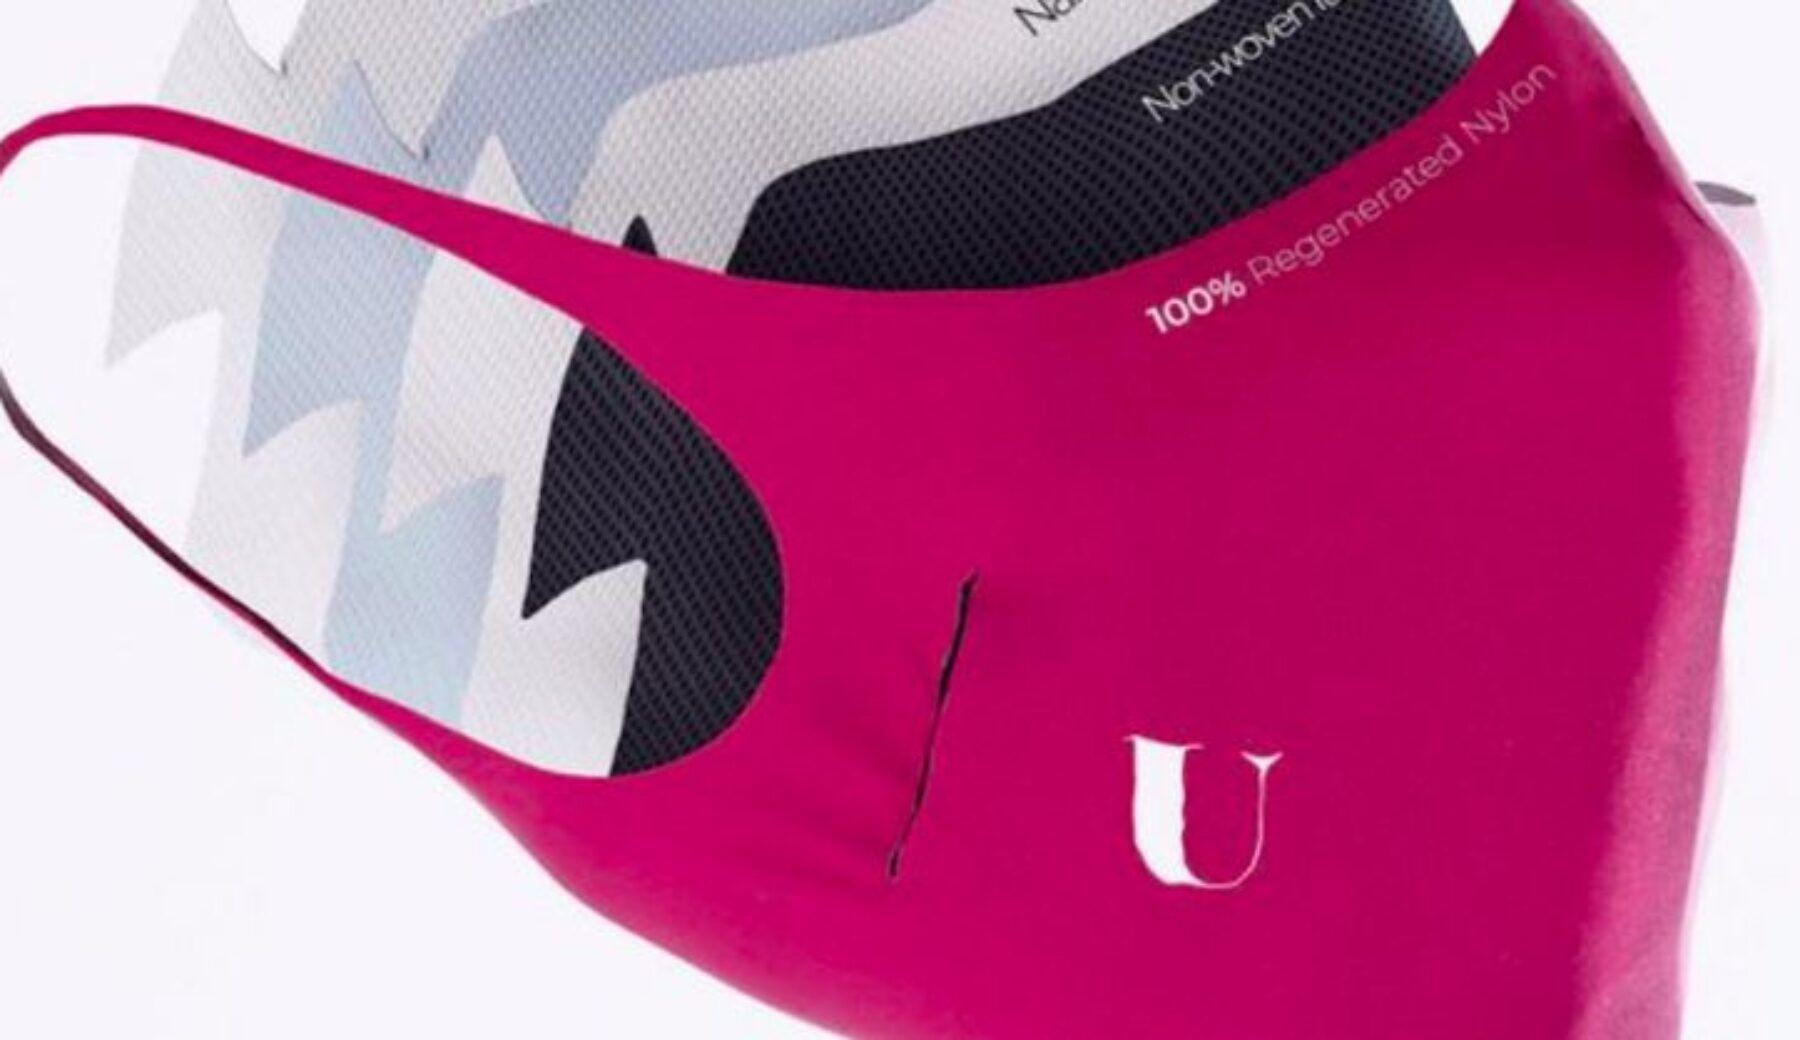 U-Mask, nuovi test effettuati: “La filtrazione è di poco superiore al 60%”